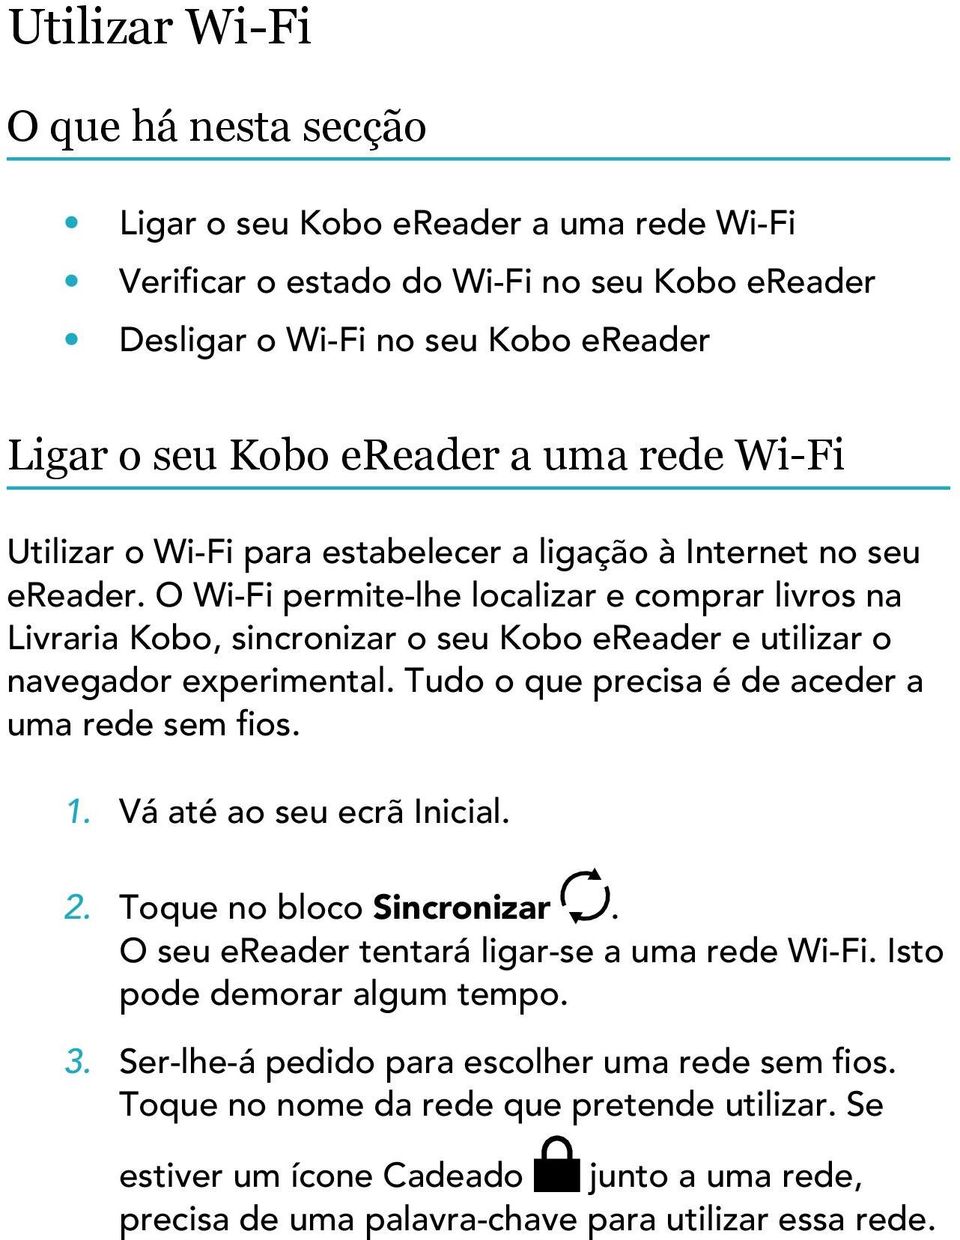 O Wi-Fi permite-lhe localizar e comprar livros na Livraria Kobo, sincronizar o seu Kobo ereader e utilizar o navegador experimental. Tudo o que precisa é de aceder a uma rede sem fios. 1.